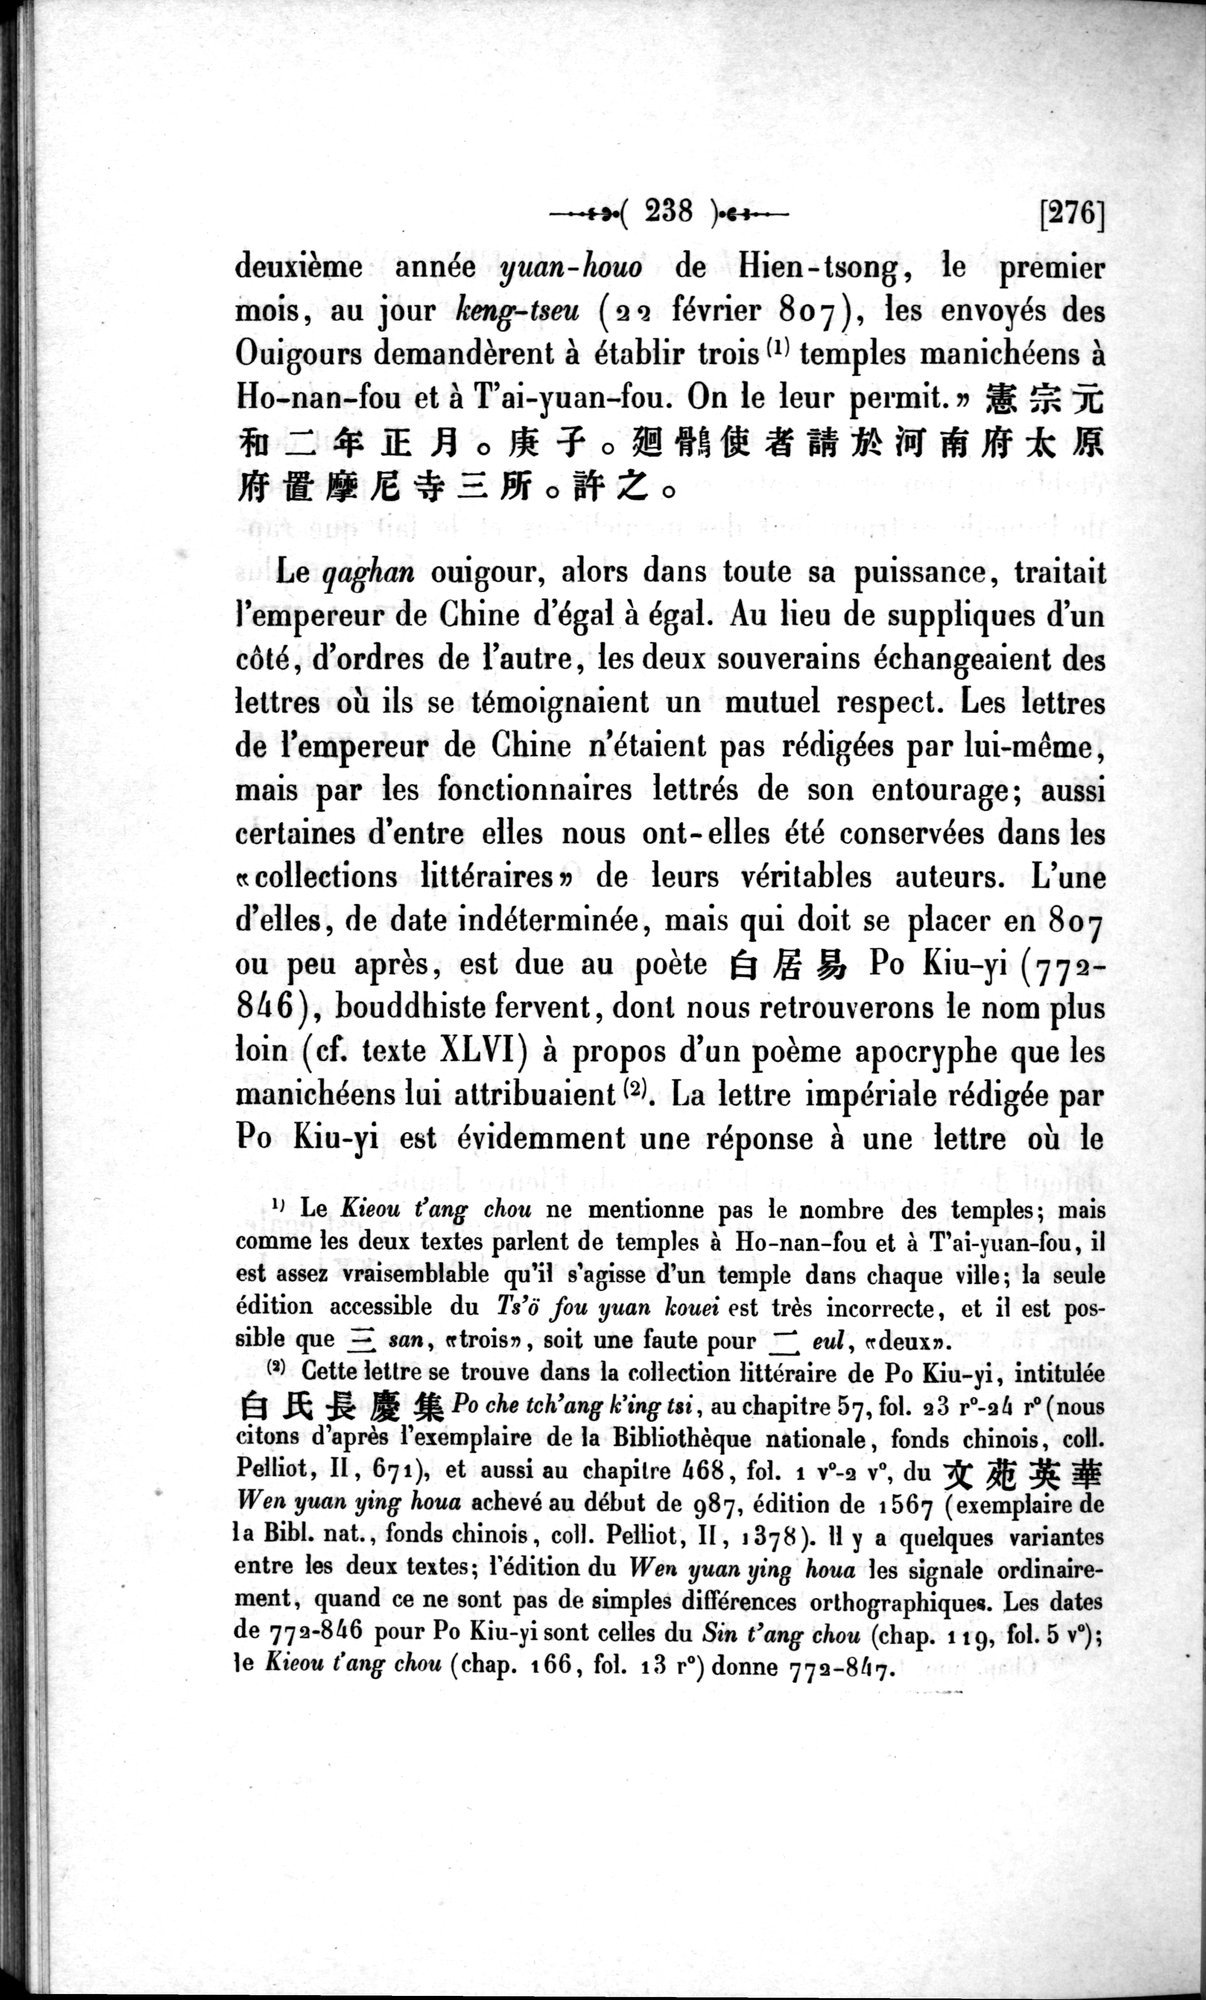 Un traité manichéen retrouvé en Chine : vol.1 / Page 248 (Grayscale High Resolution Image)